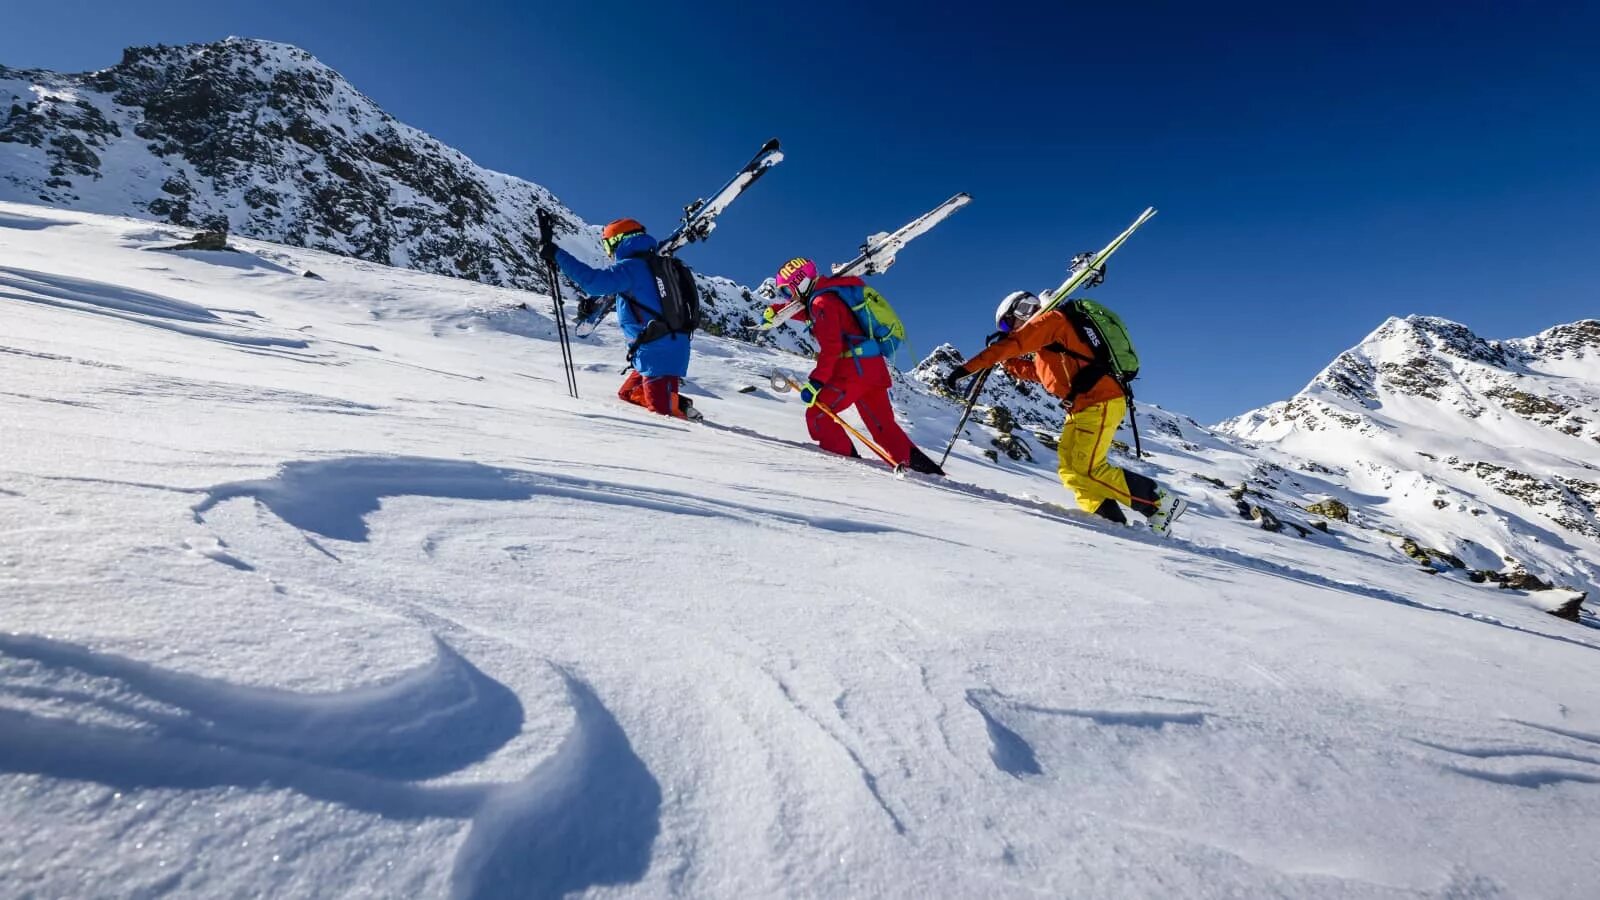 Skiing holiday. Андорра горные лыжи. Вальнорд Андорра. Андорра горнолыжка. Андорра лыжники.